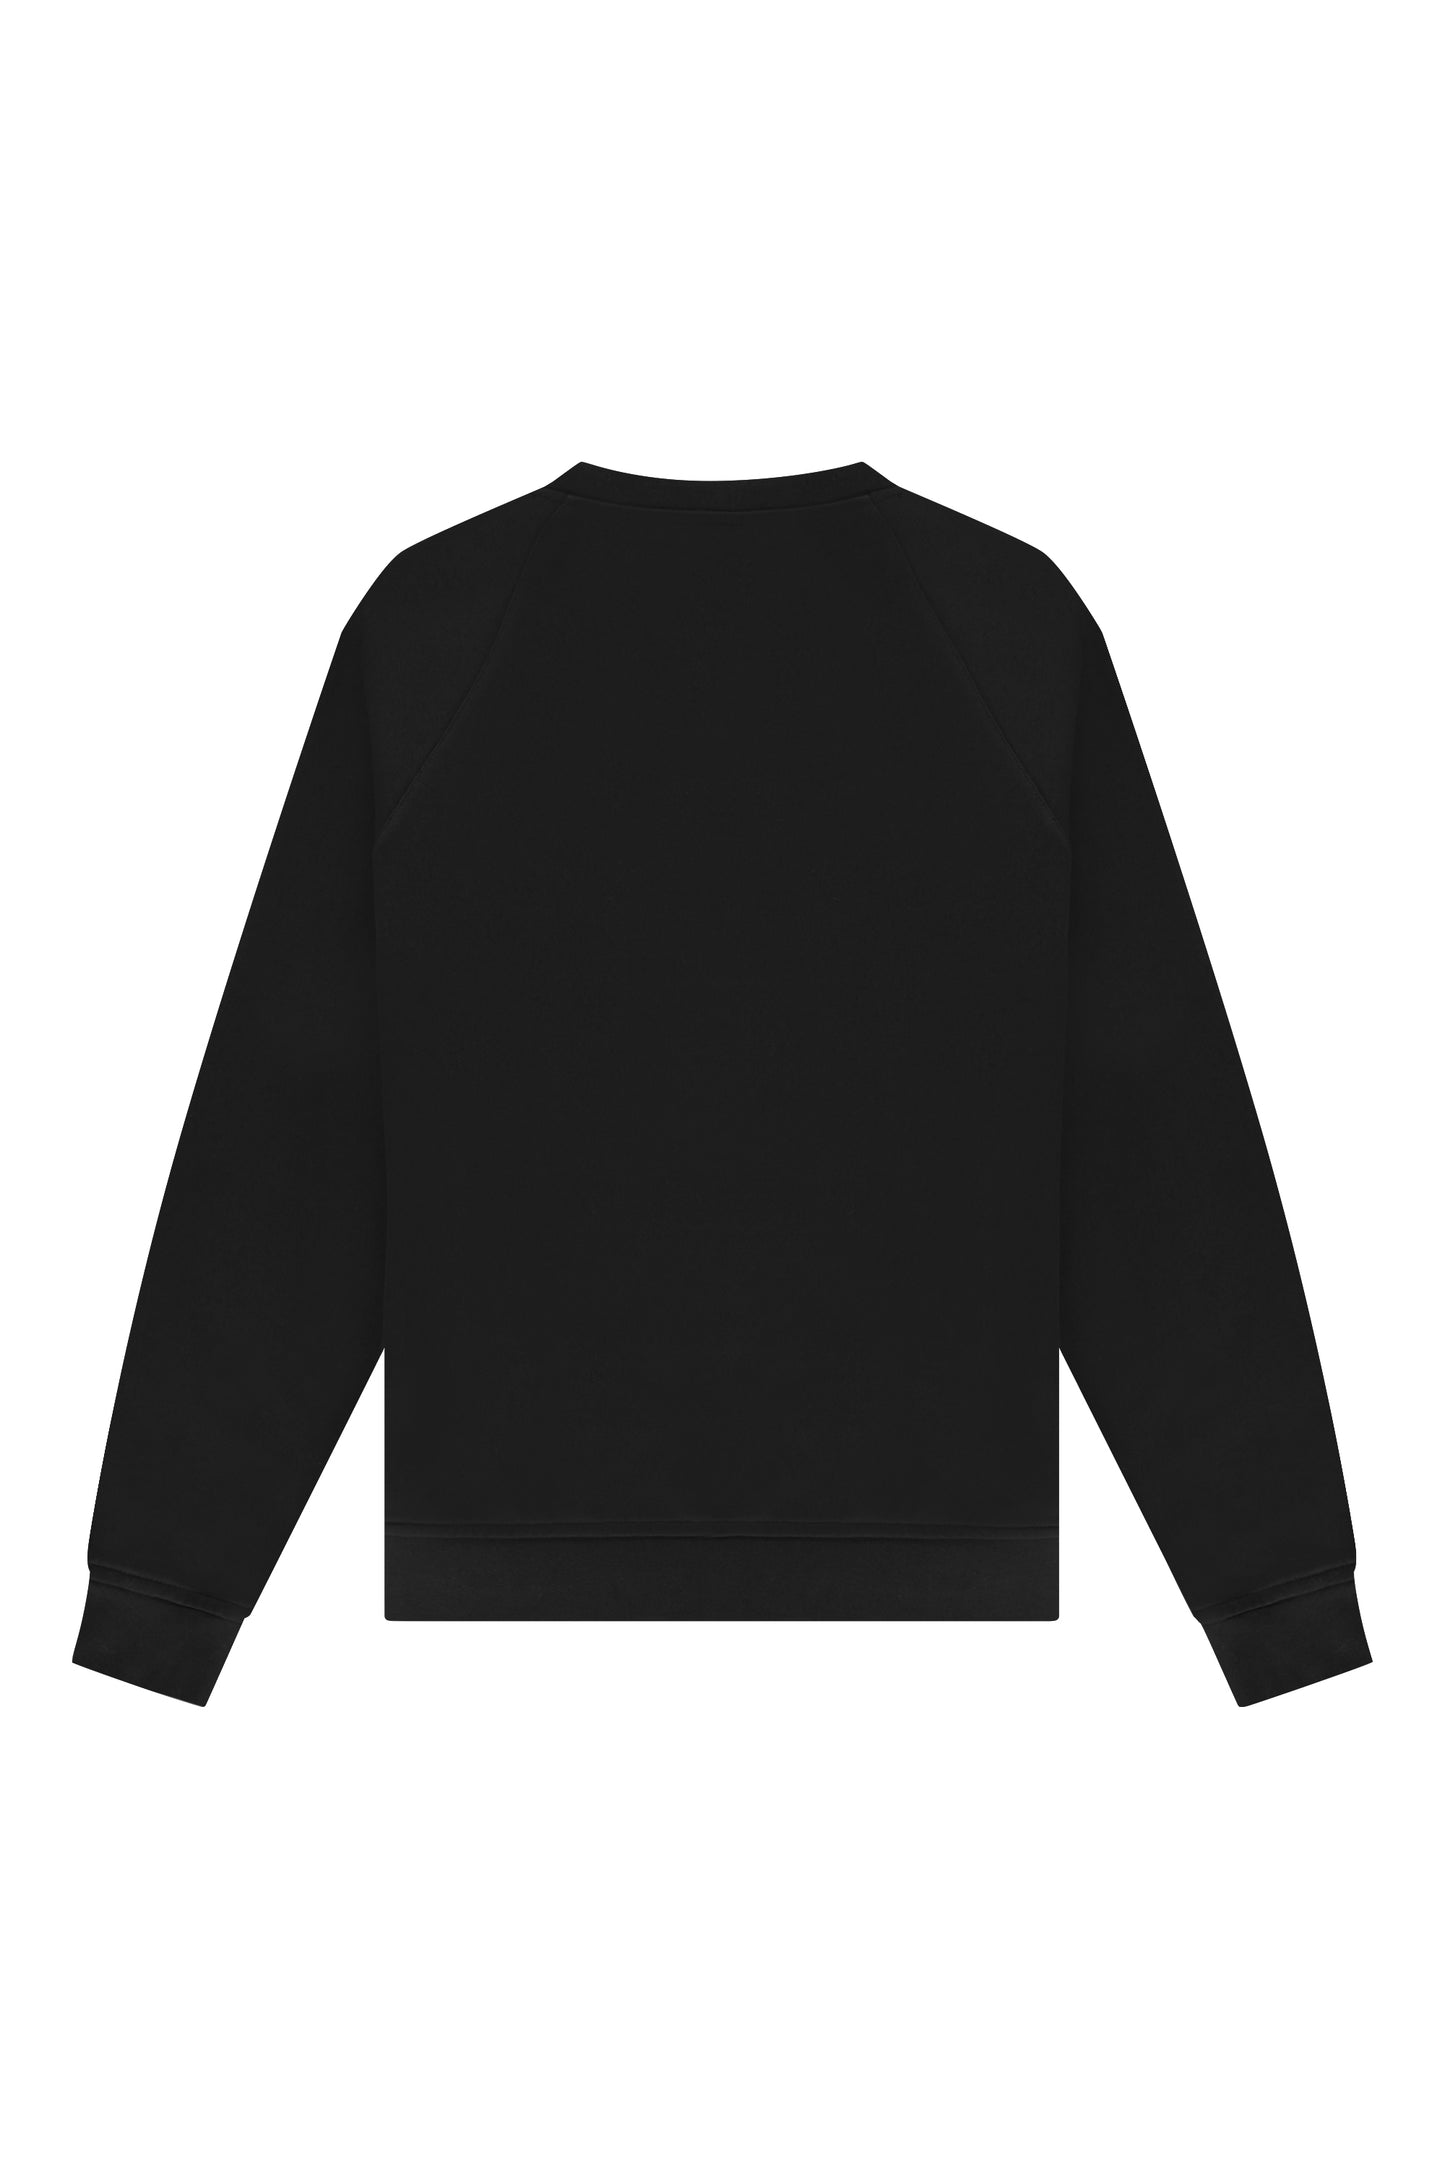 Elemental Sweater